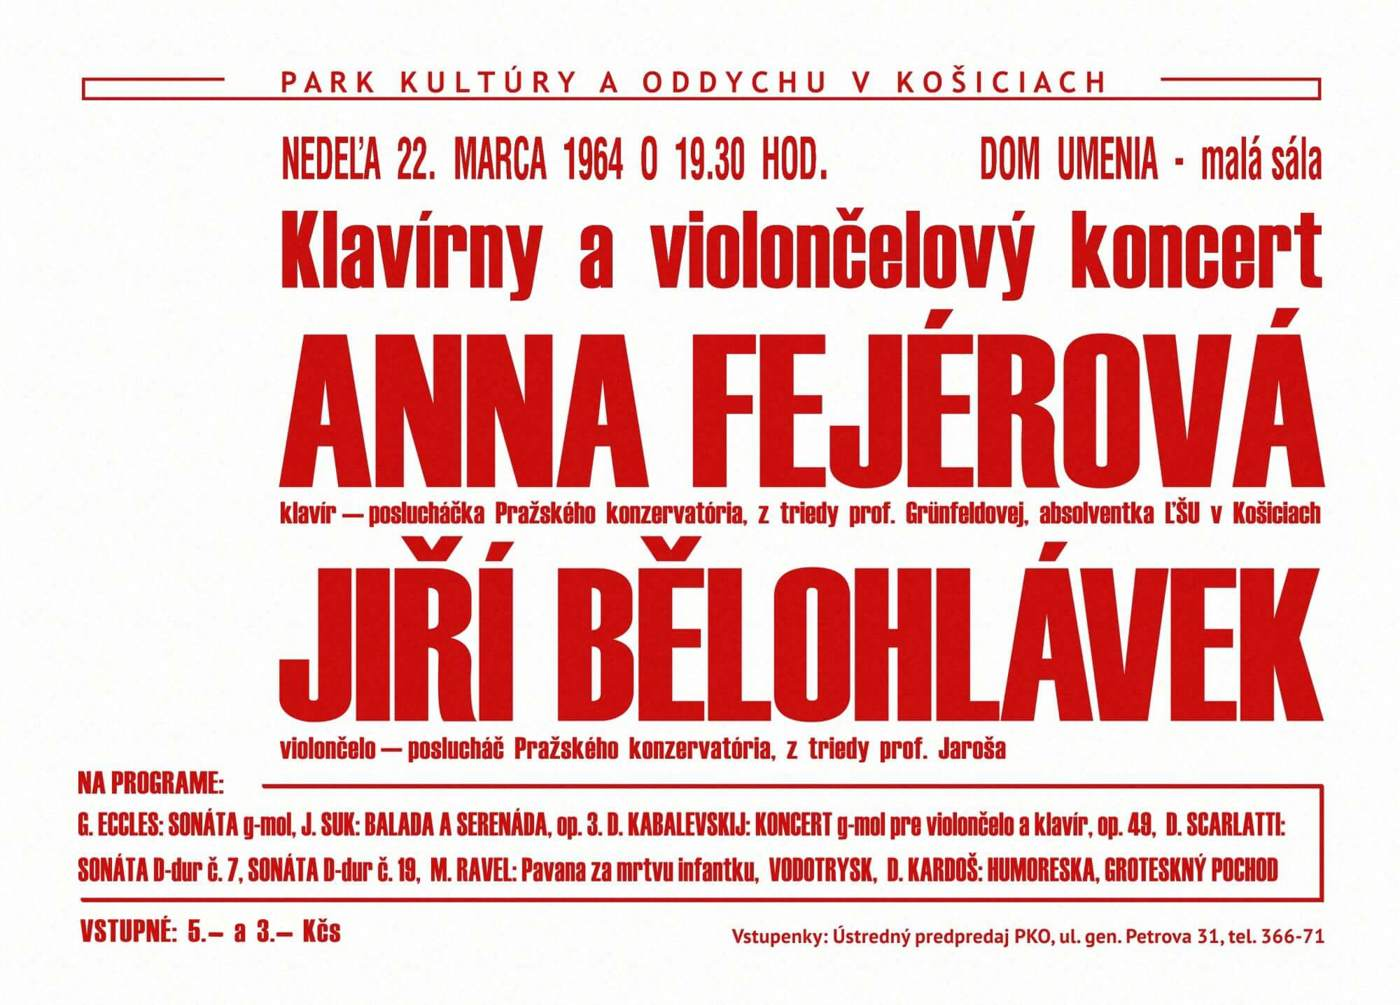 A concert of Jiří Bělohlávek and Anna Fejérová